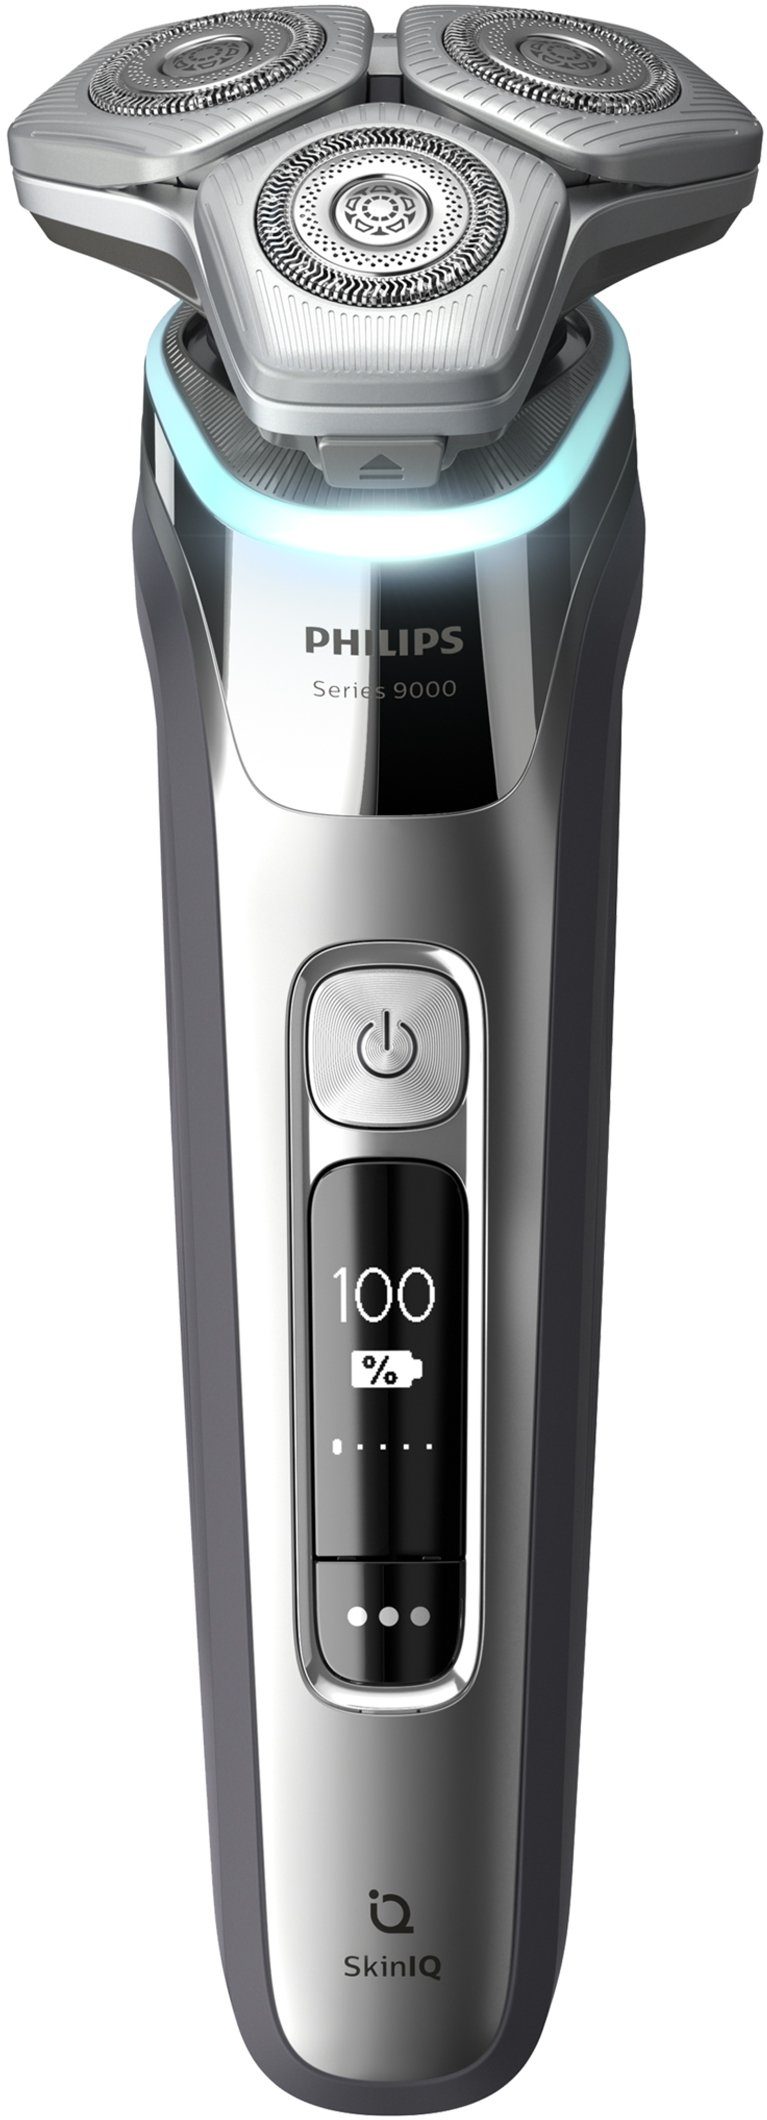 Philips Elektrorasierer Etui inkl. S9985/35, 9000 Shaver series und Skin mit Technologie, IQ Ladestation